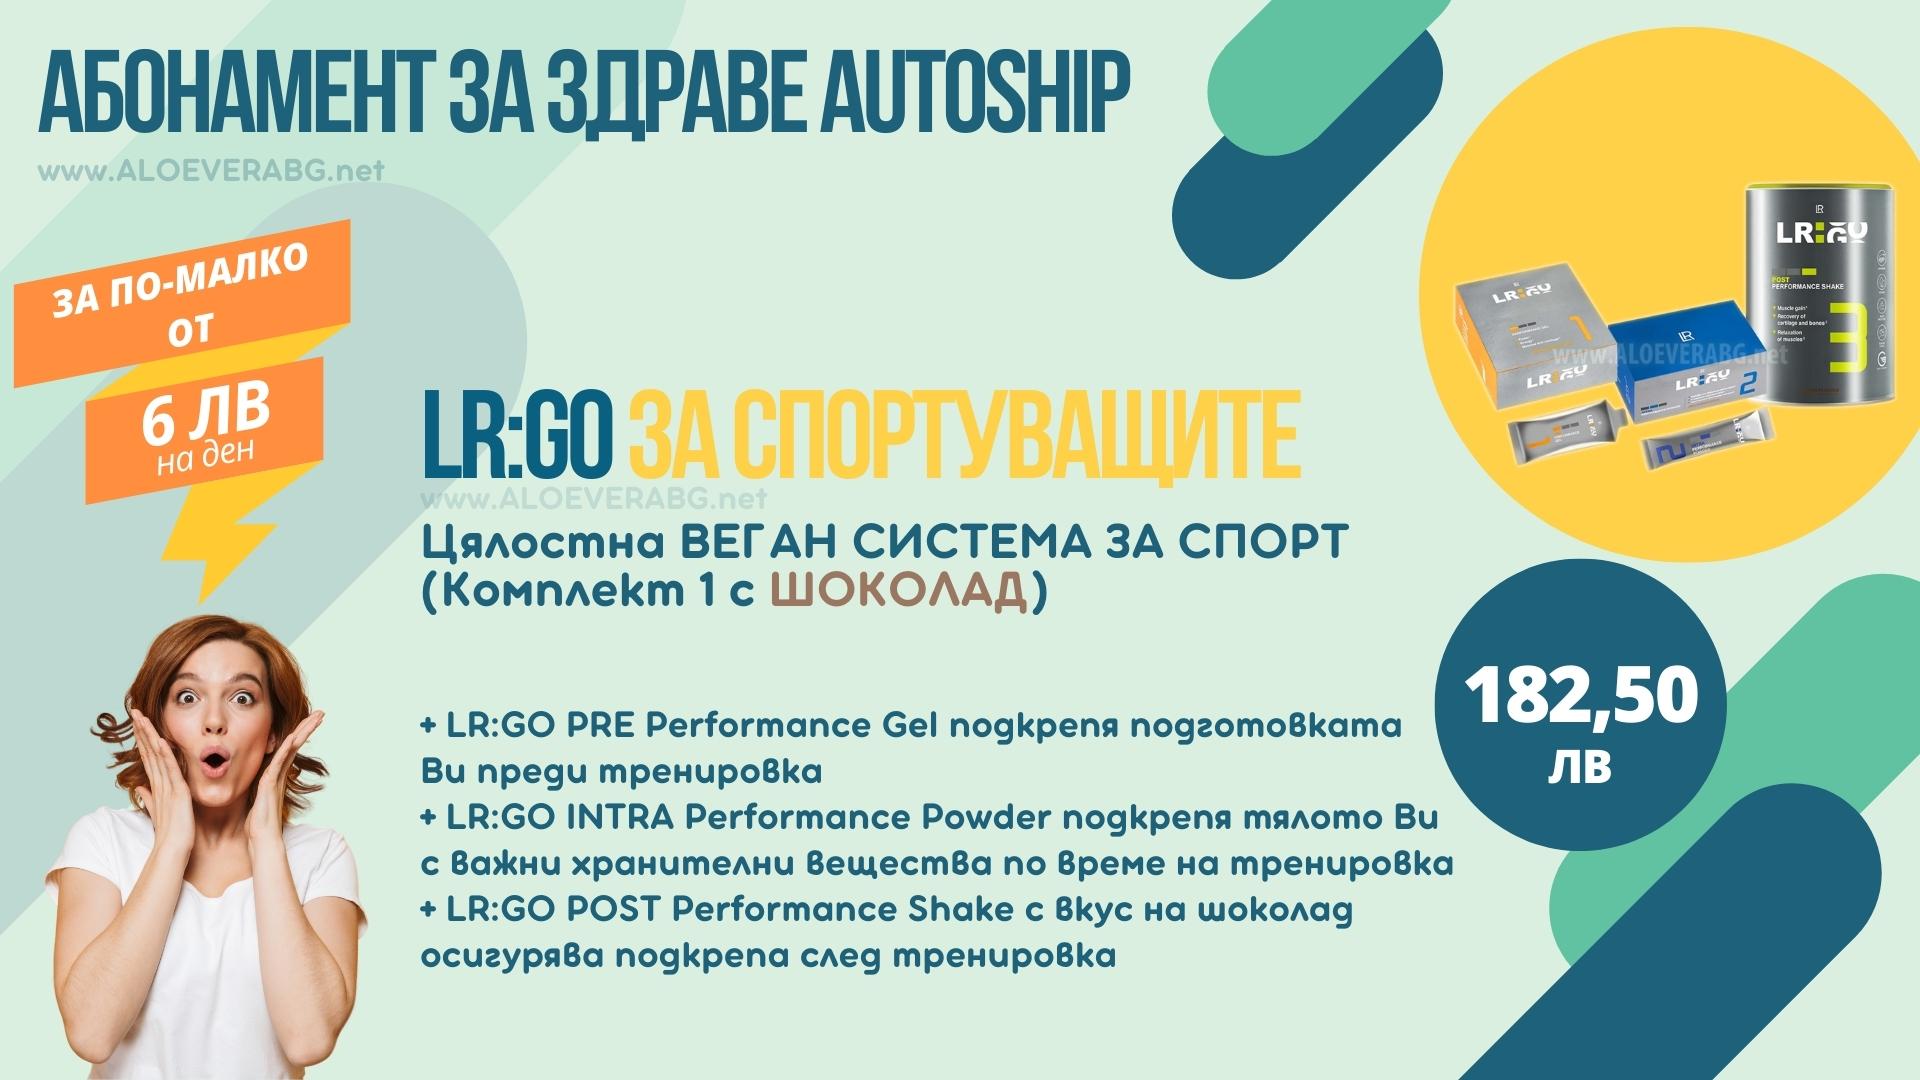 LR Autoship LR:GO Вариант 1 - Абонаментна програма за НАЙ-ИЗГОДНА ЦЕНА!